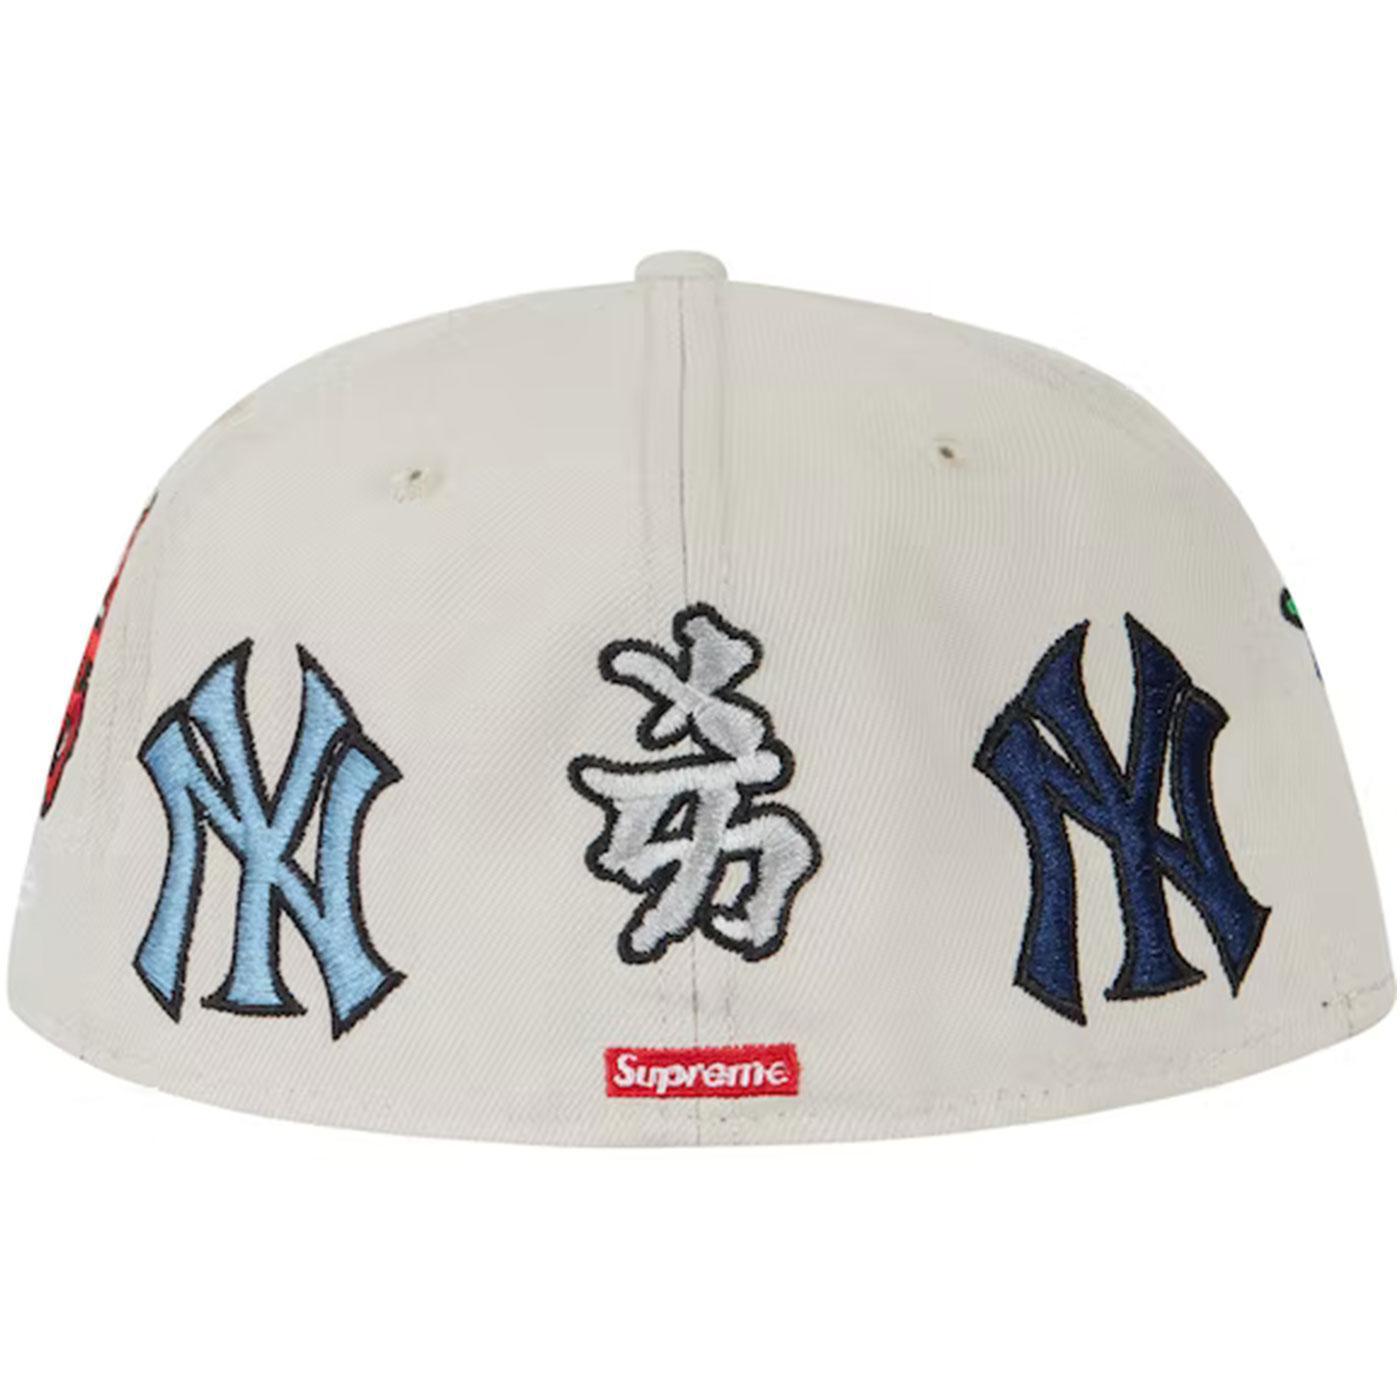 お得クーポン発行中 Supreme New York Yankees Kanji Sweatpant tbg.qa